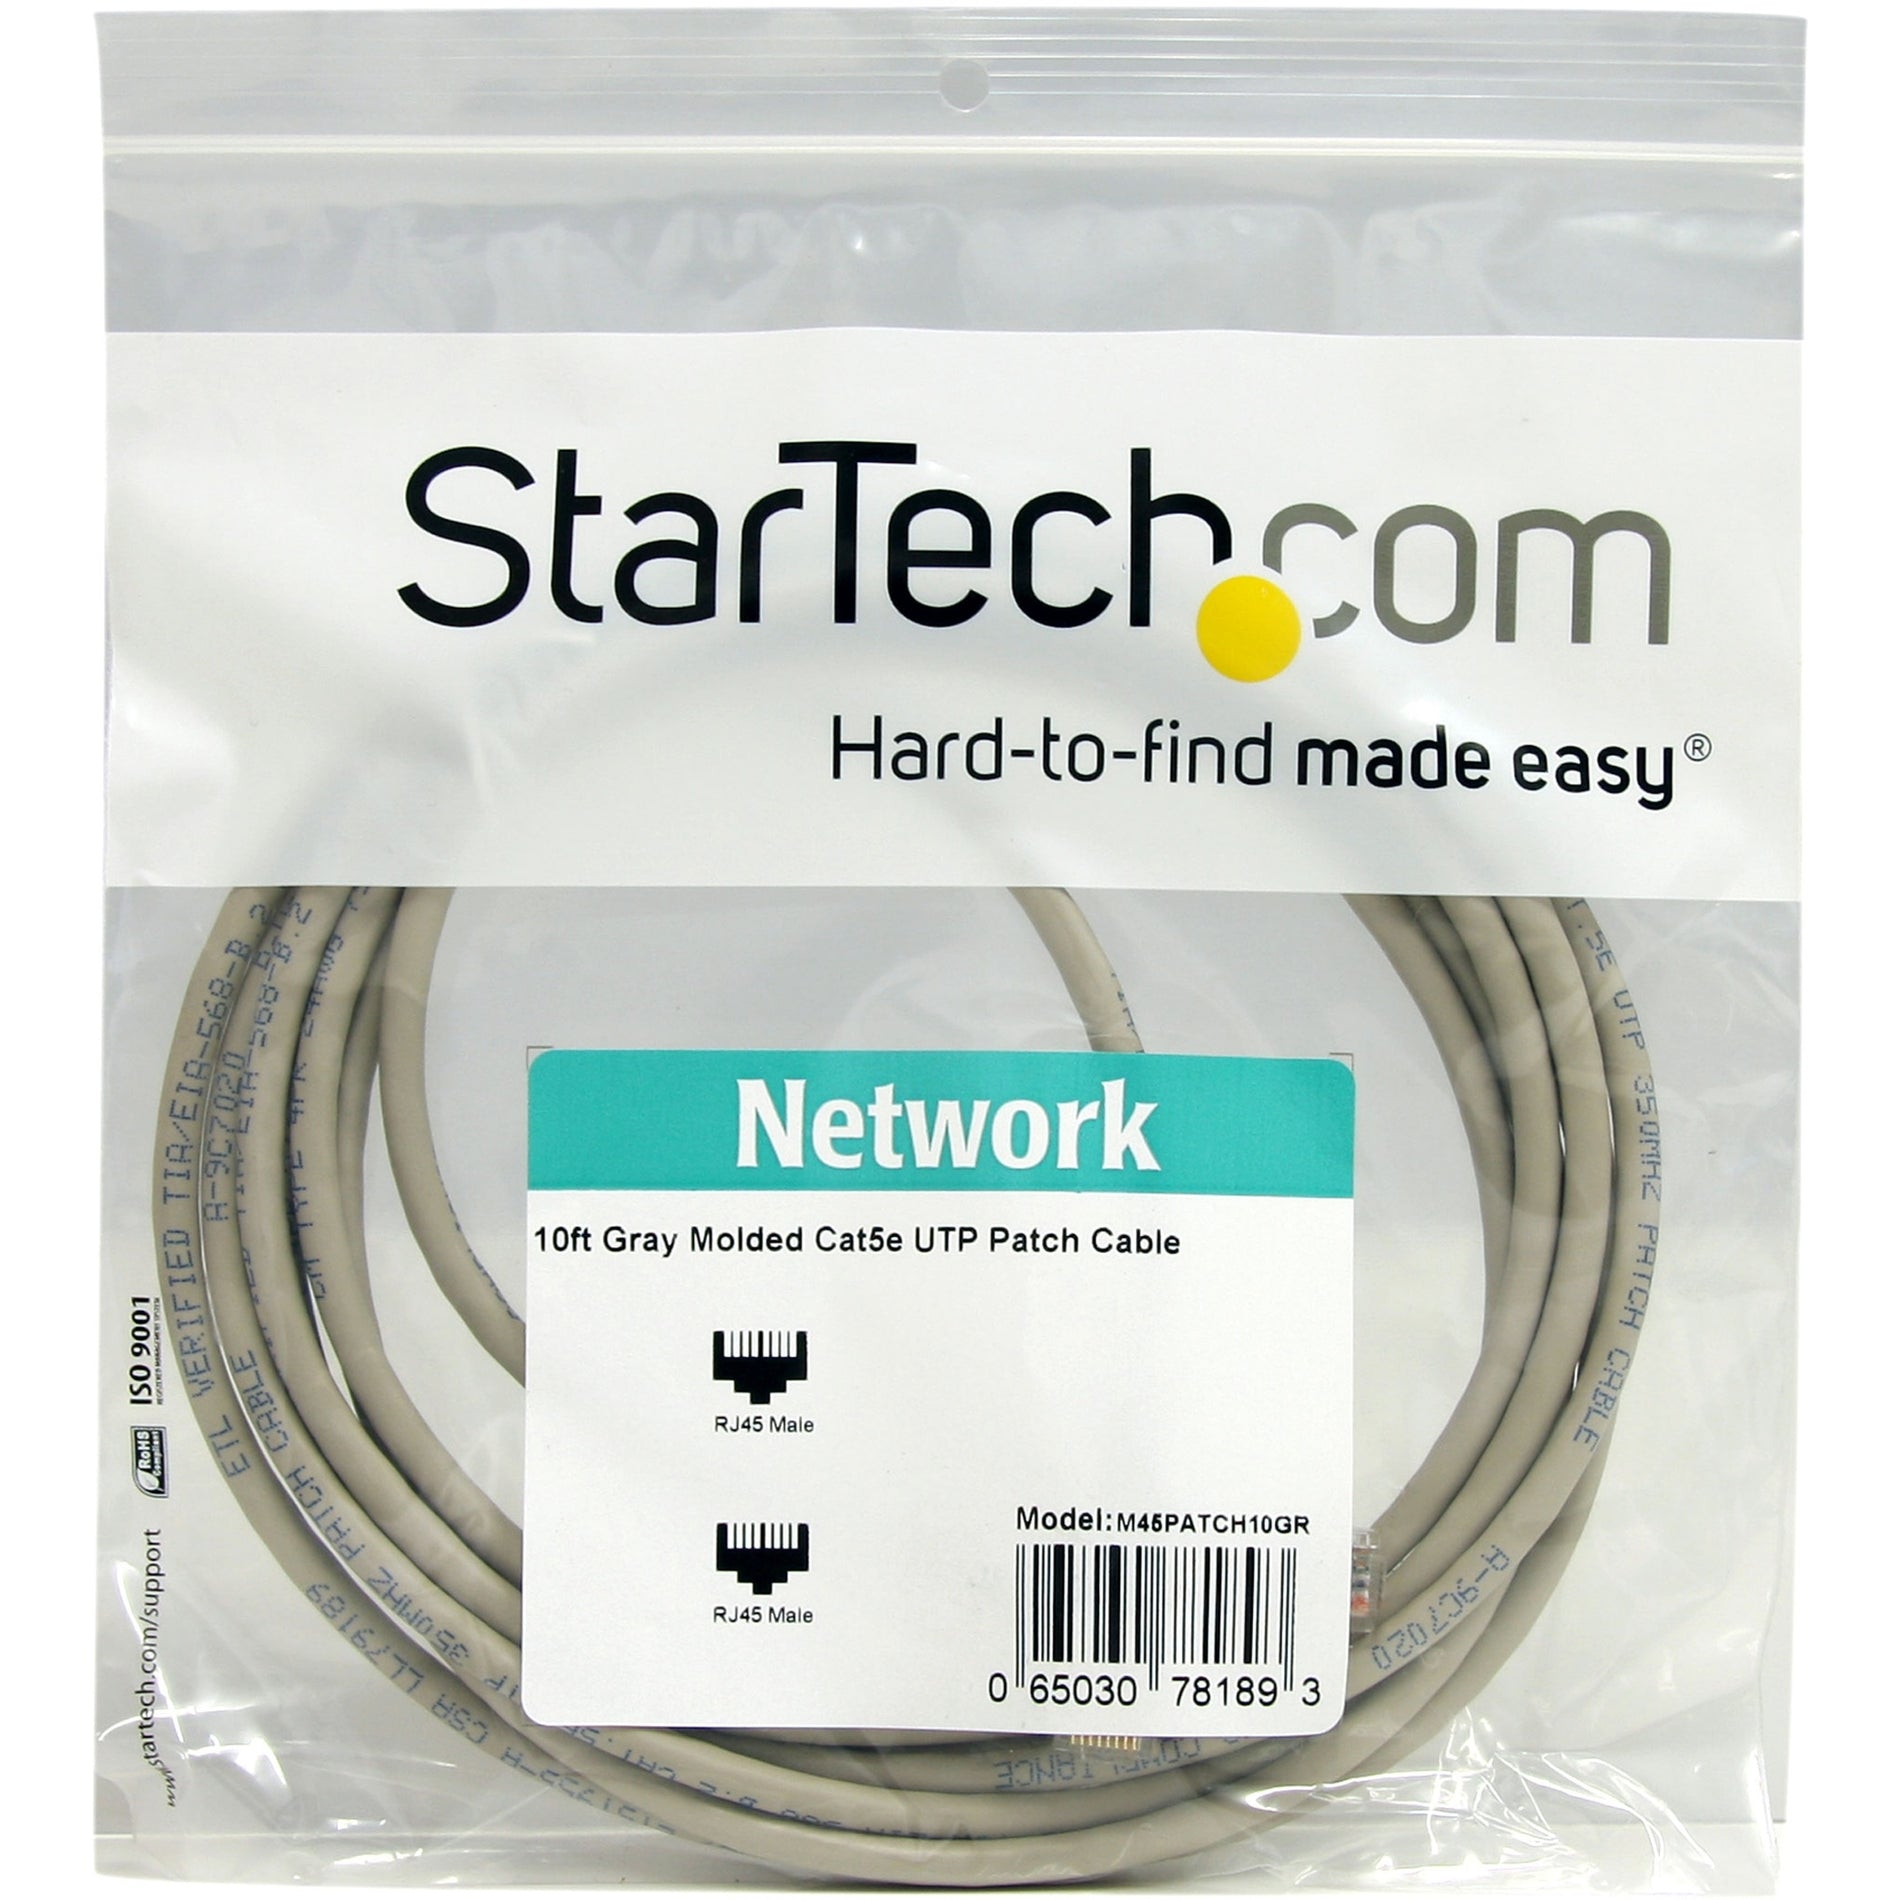 StarTech.com M45PATCH10GR 10ft Gray Molded Cat5e UTP Patch Cable, Lifetime Warranty, 50-micron Gold Connectors